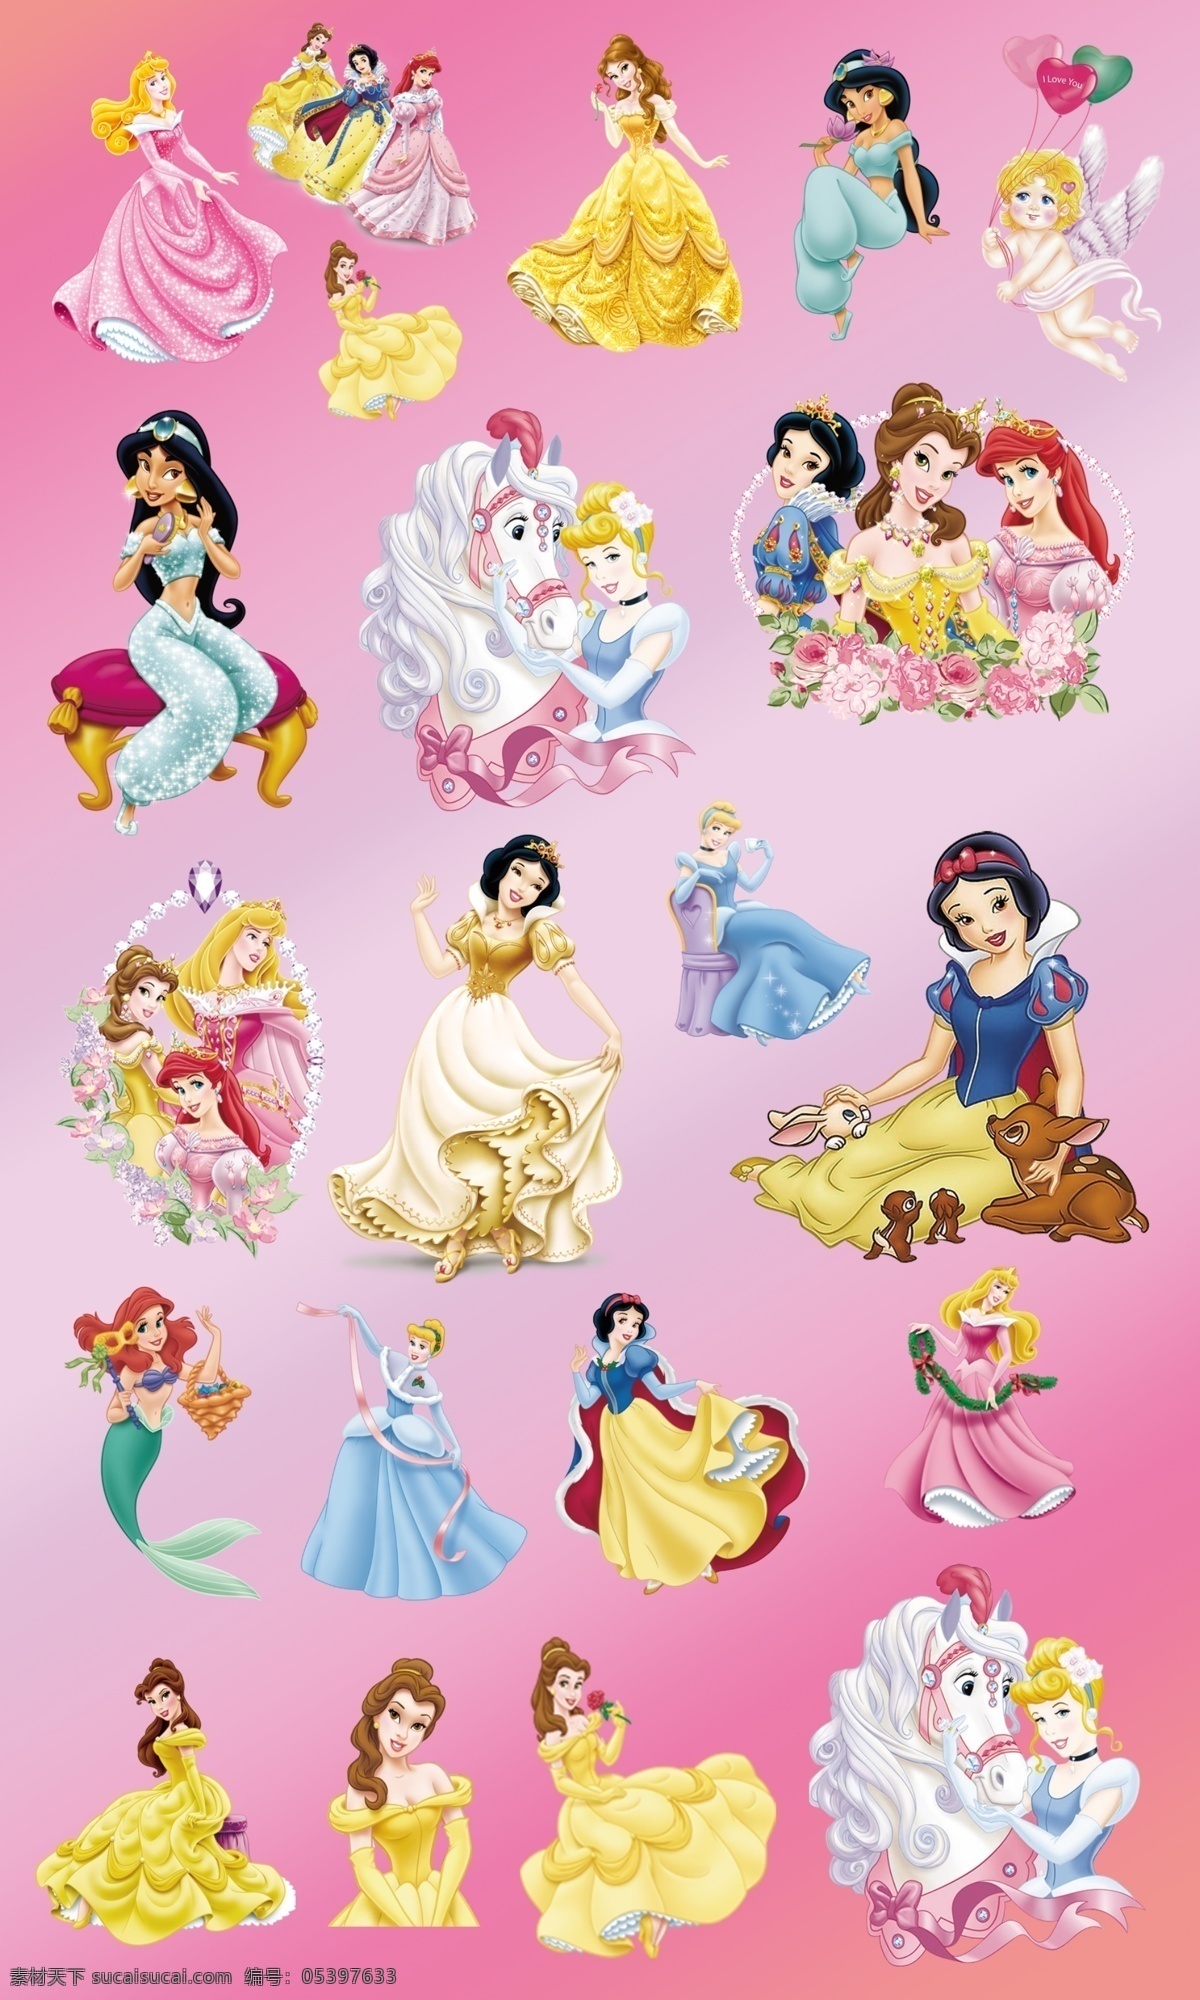 迪士尼 公主 白雪公主 迪士尼公主 爱丽儿公主 贝儿公主 仙蒂公主 爱洛公主 茉莉公主 蒂安娜公主 动漫动画 动漫人物